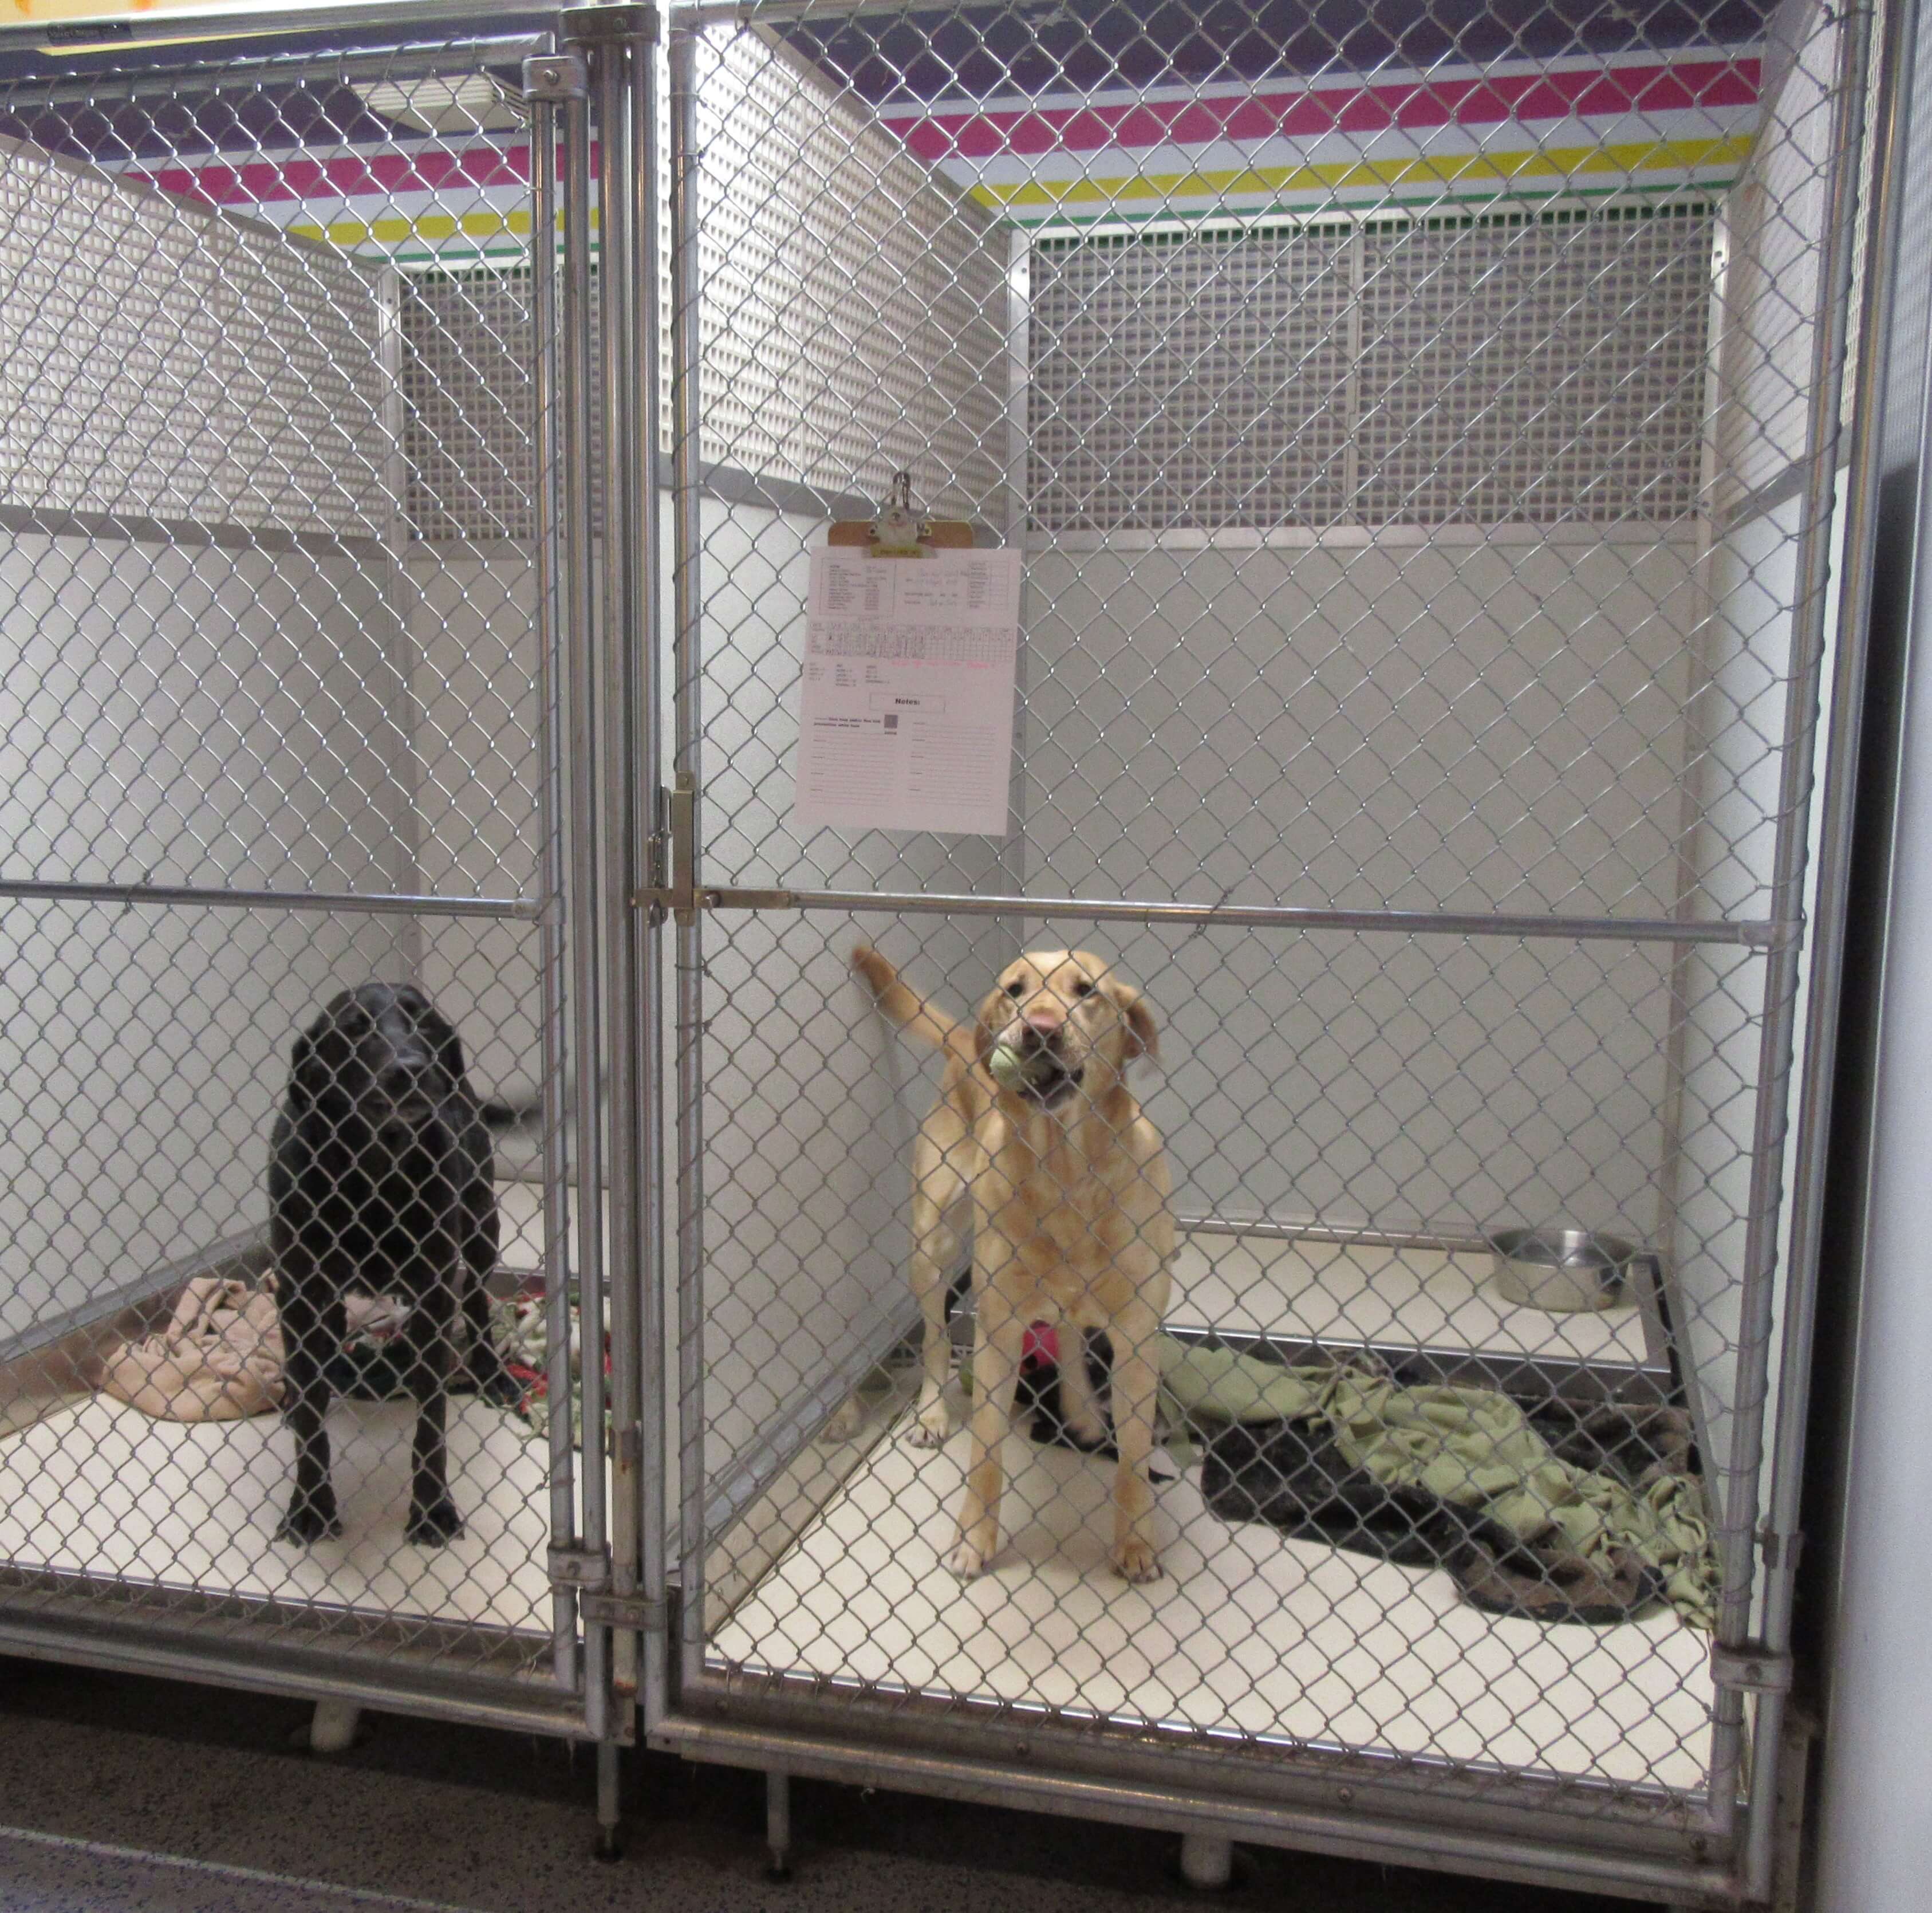 Two happy dogs in boarding kennels